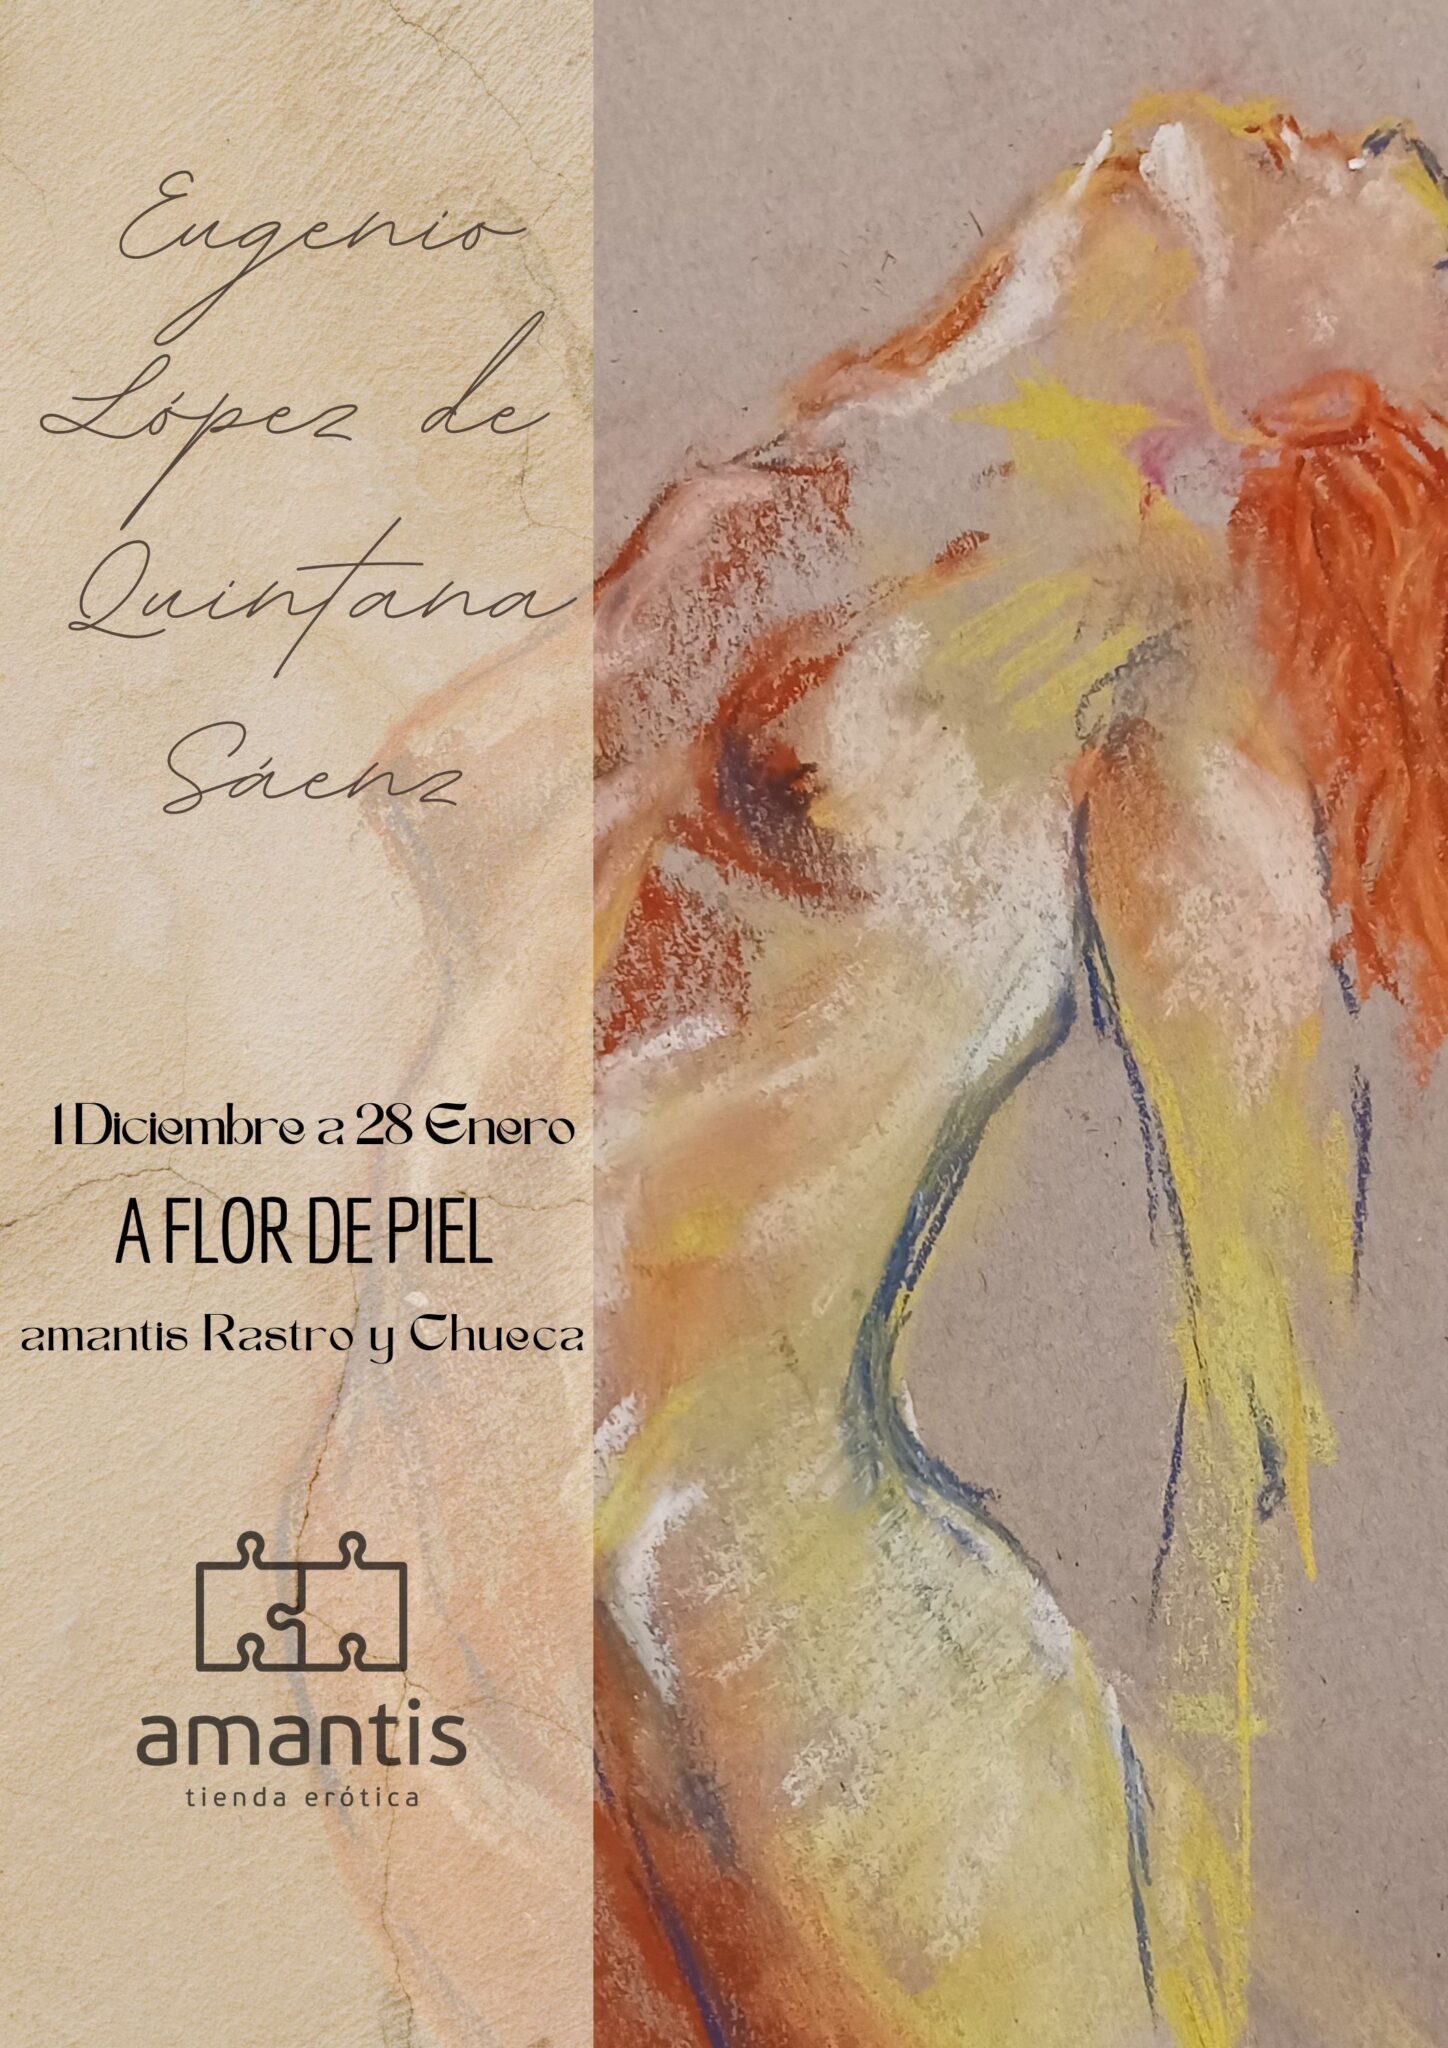 amantis Retiro, Rastro y Chueca renuevan sus exposiciones de arte erótico